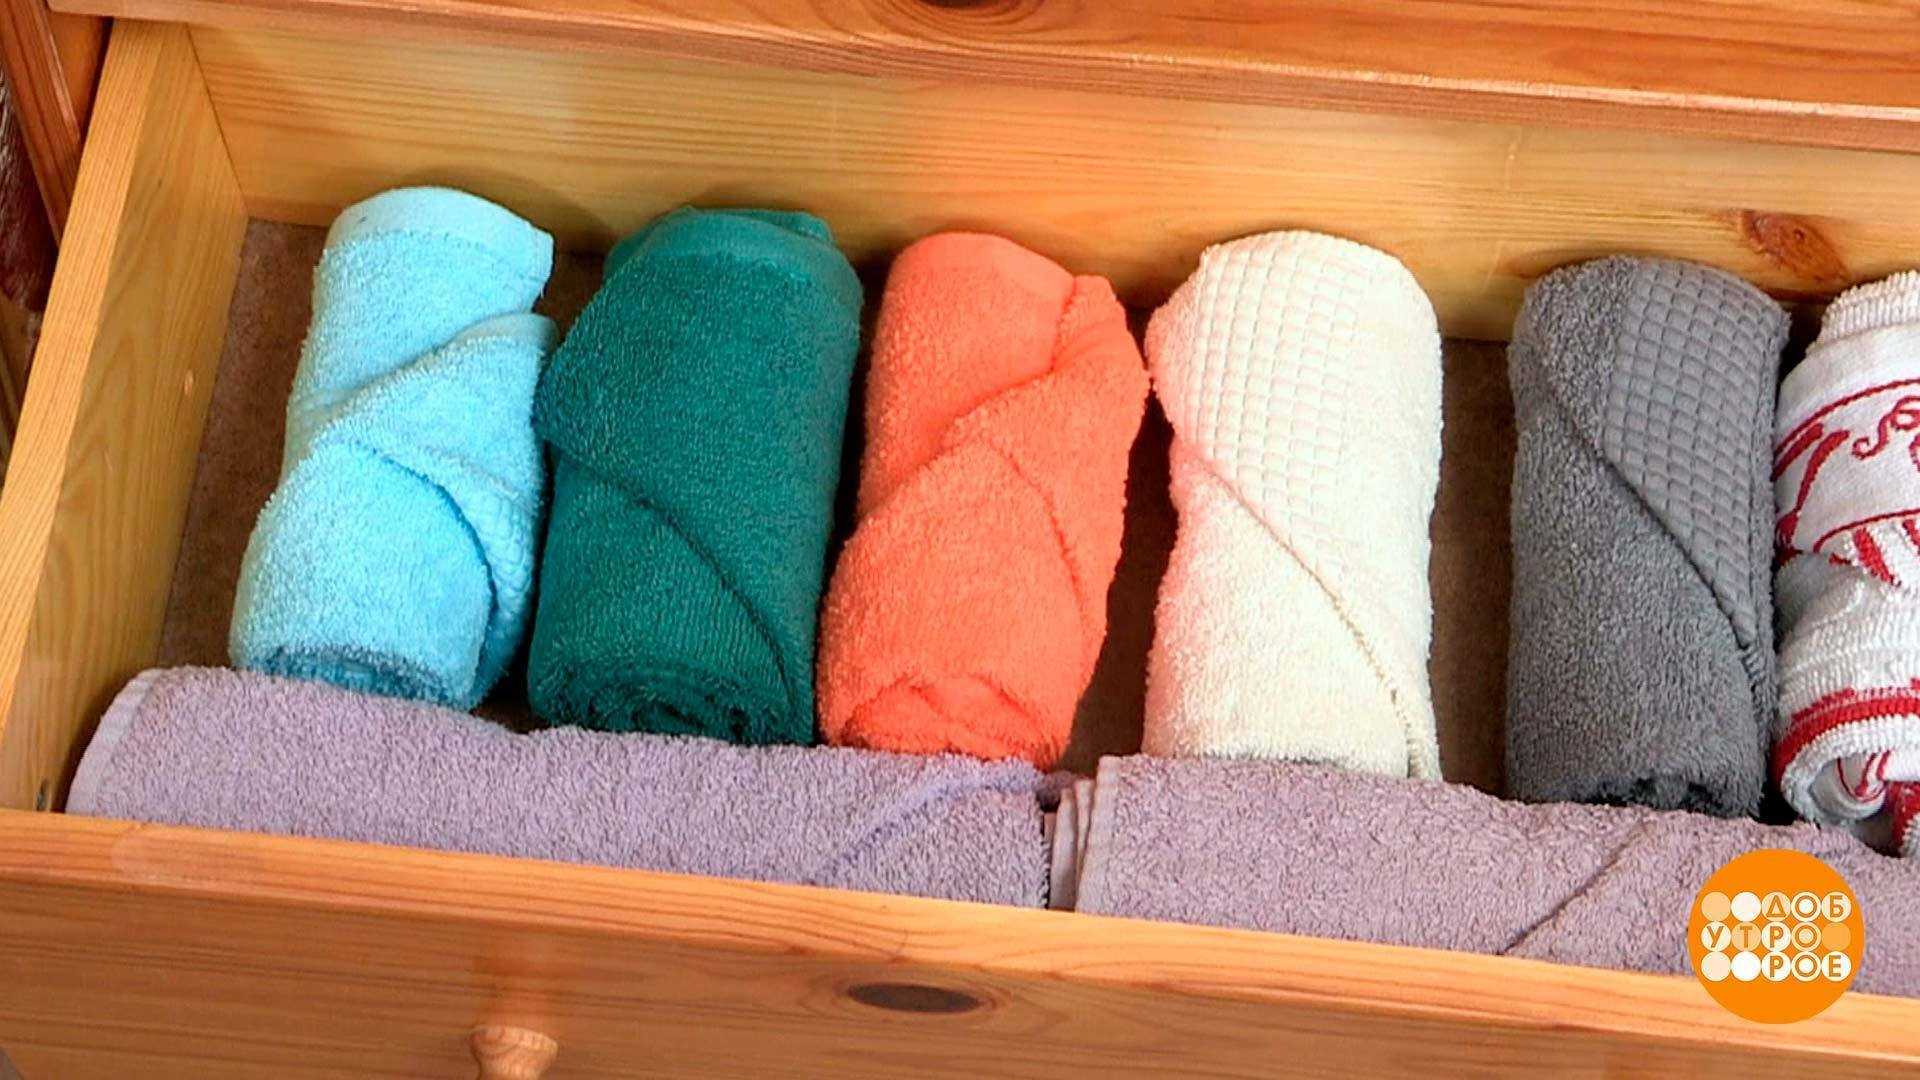 Как сделать лебедя из полотенца: пошаговая инструкция с фото, способы украсить, видео